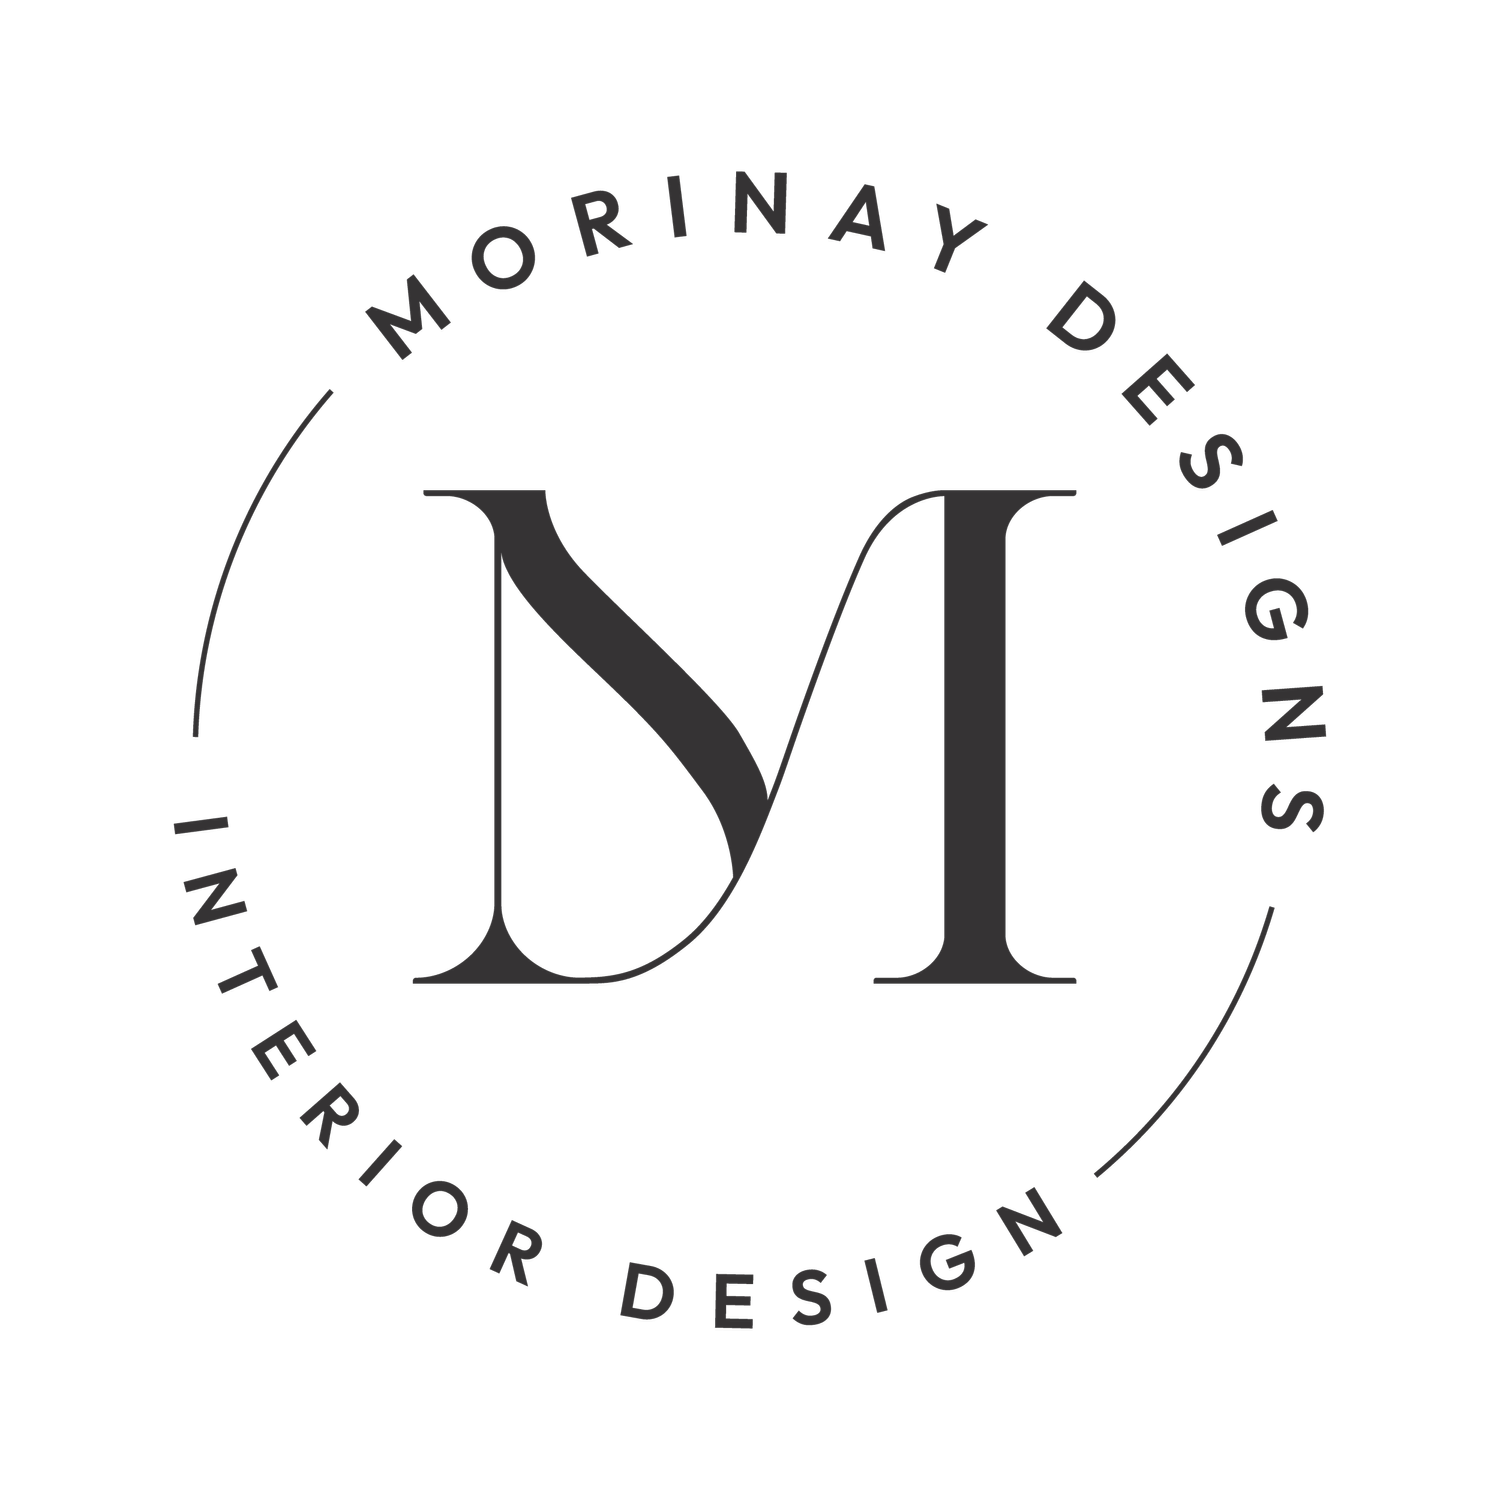 Morinay Designs